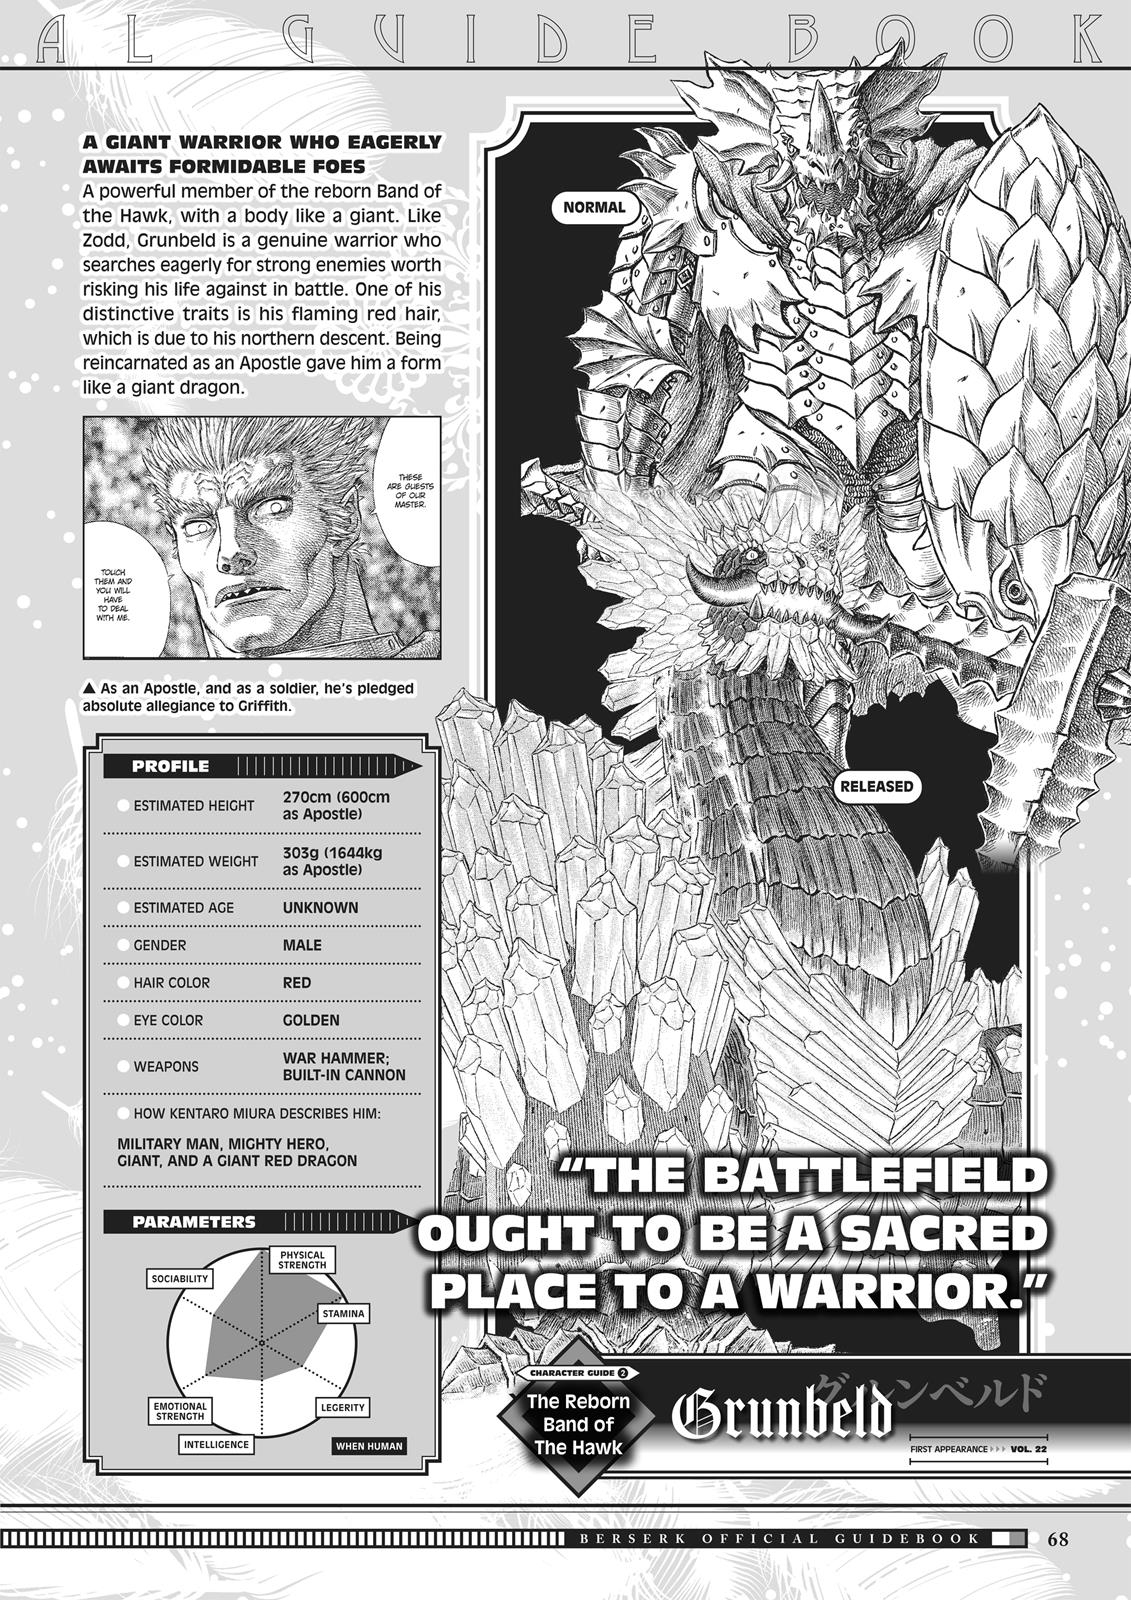 Berserk Manga Chapter 350.5 image 066